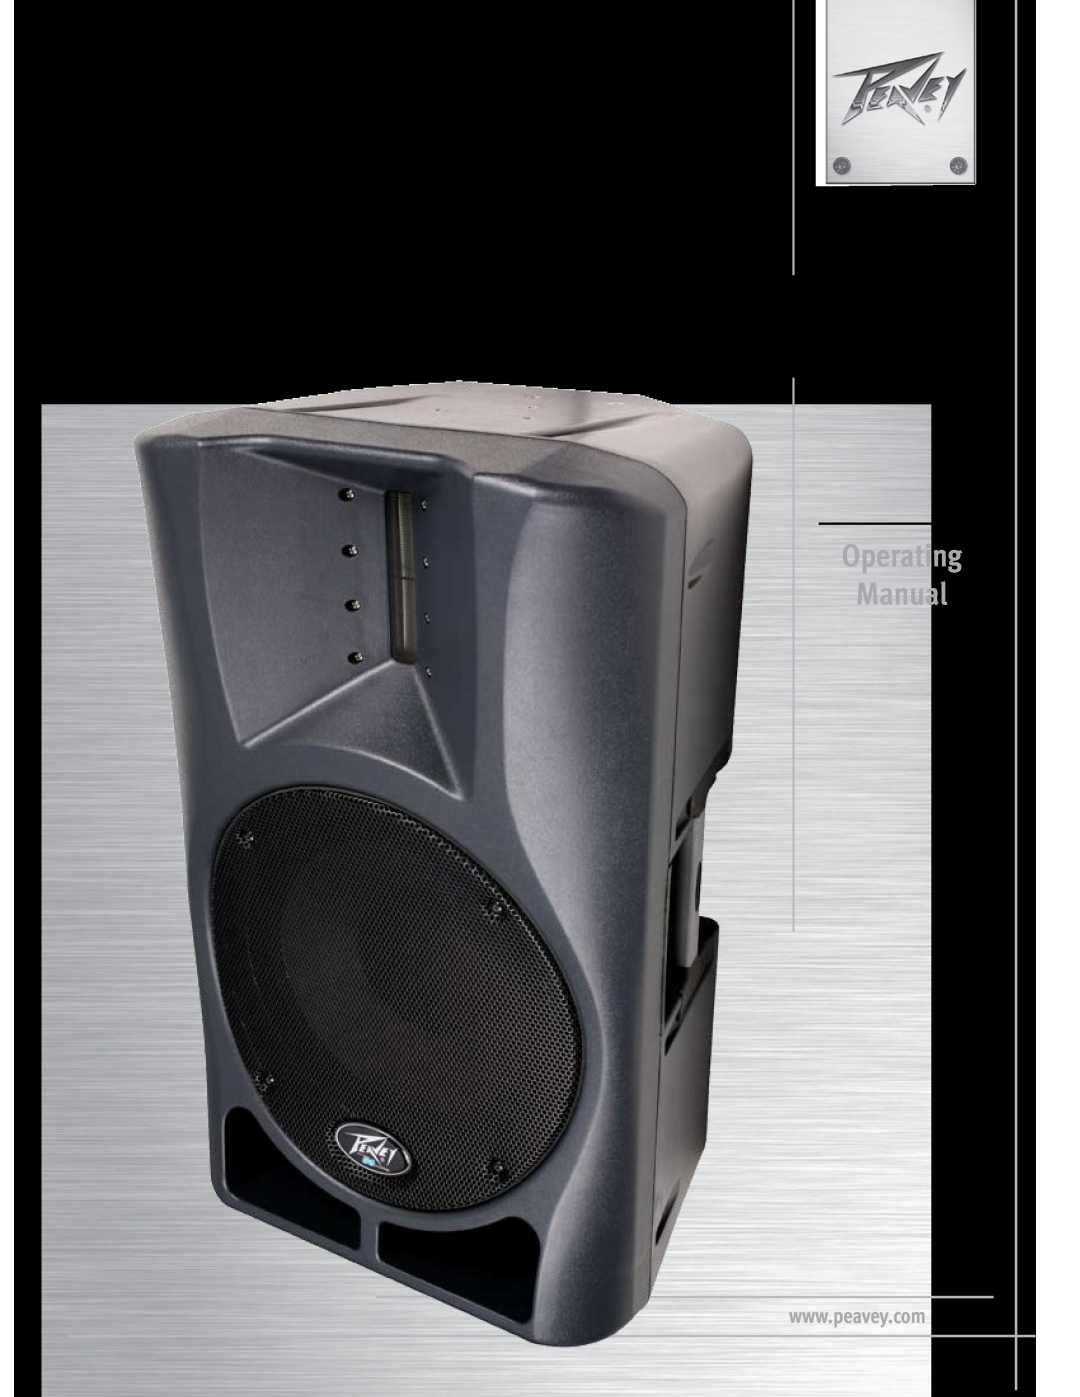 Peavey manual Impulse12 D, Operating Manual, Bi-amplifiedClass D powered speaker system 